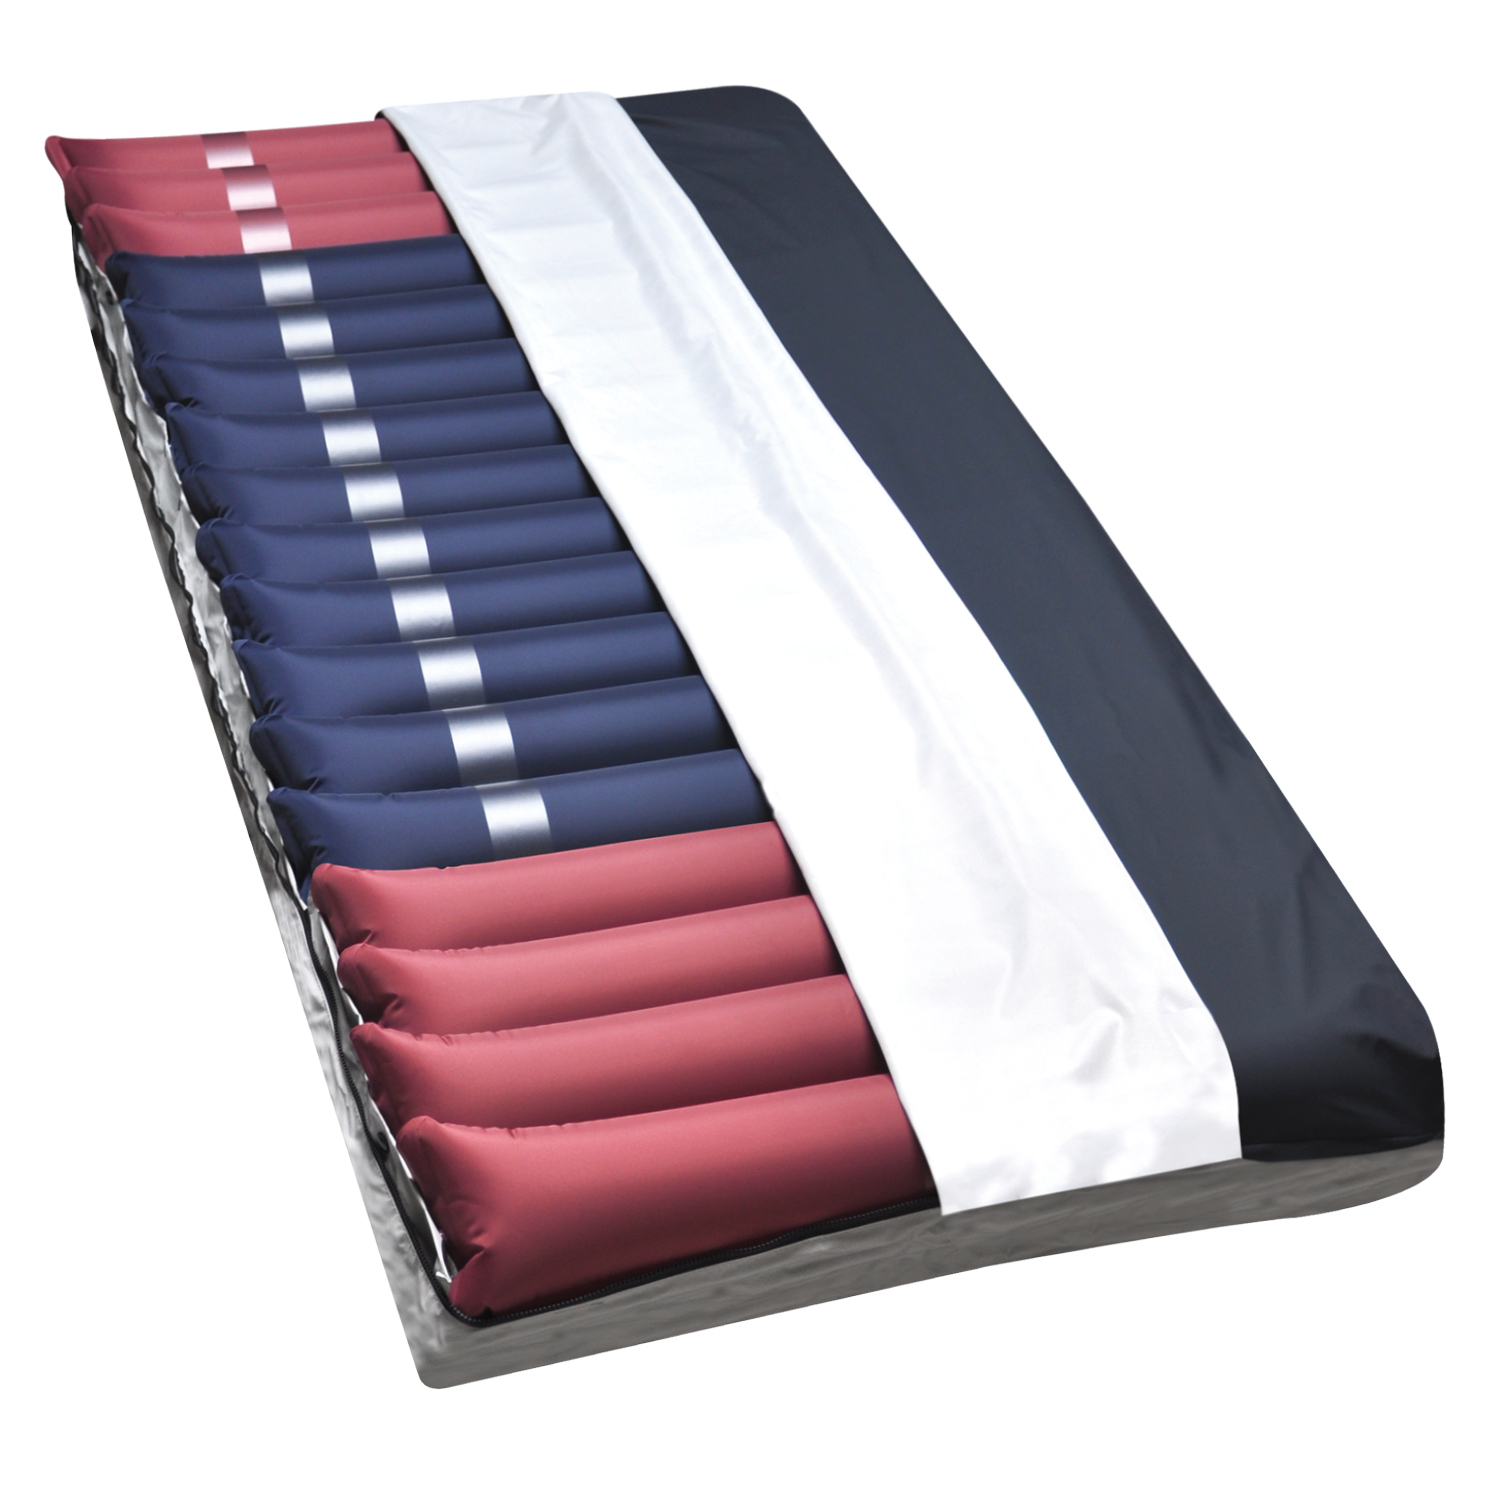 Nausiflow 2-512-e air mattress